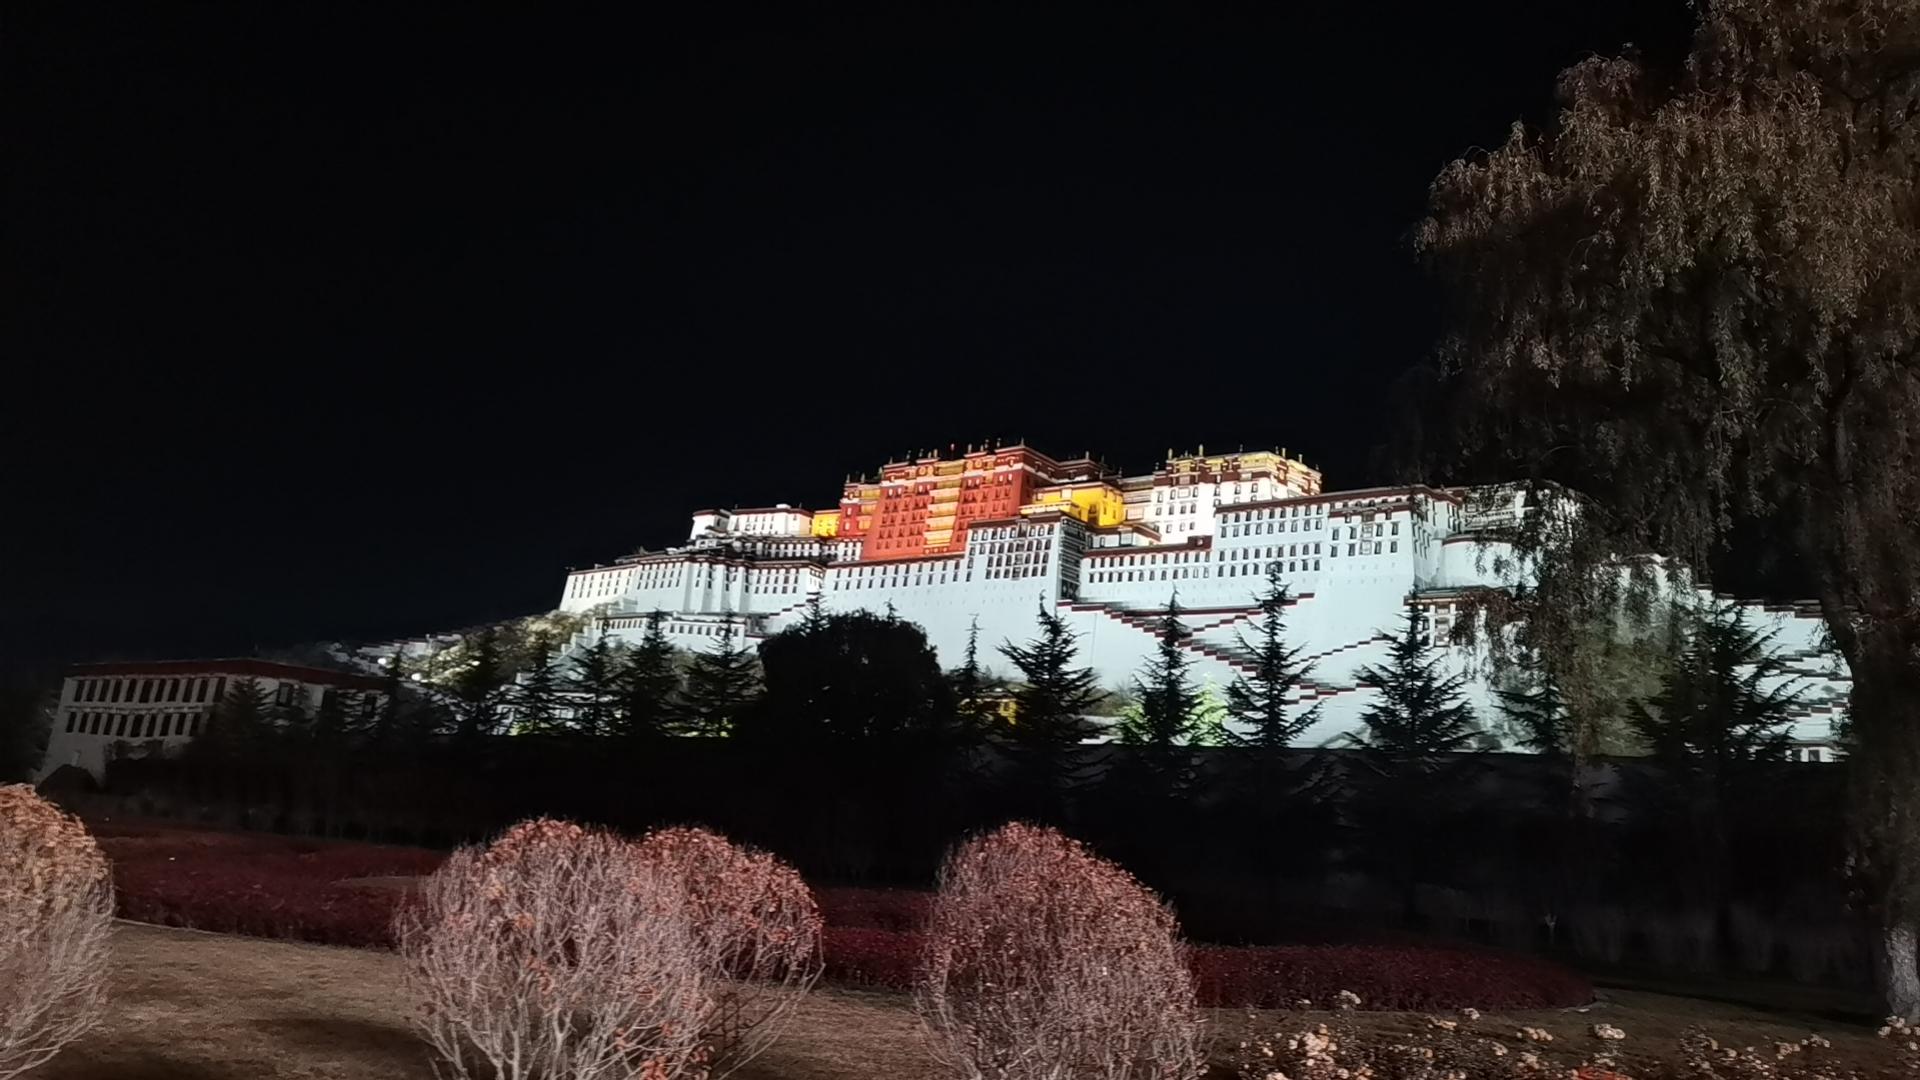 大魏哥 的想法: 布达拉宫夜景 